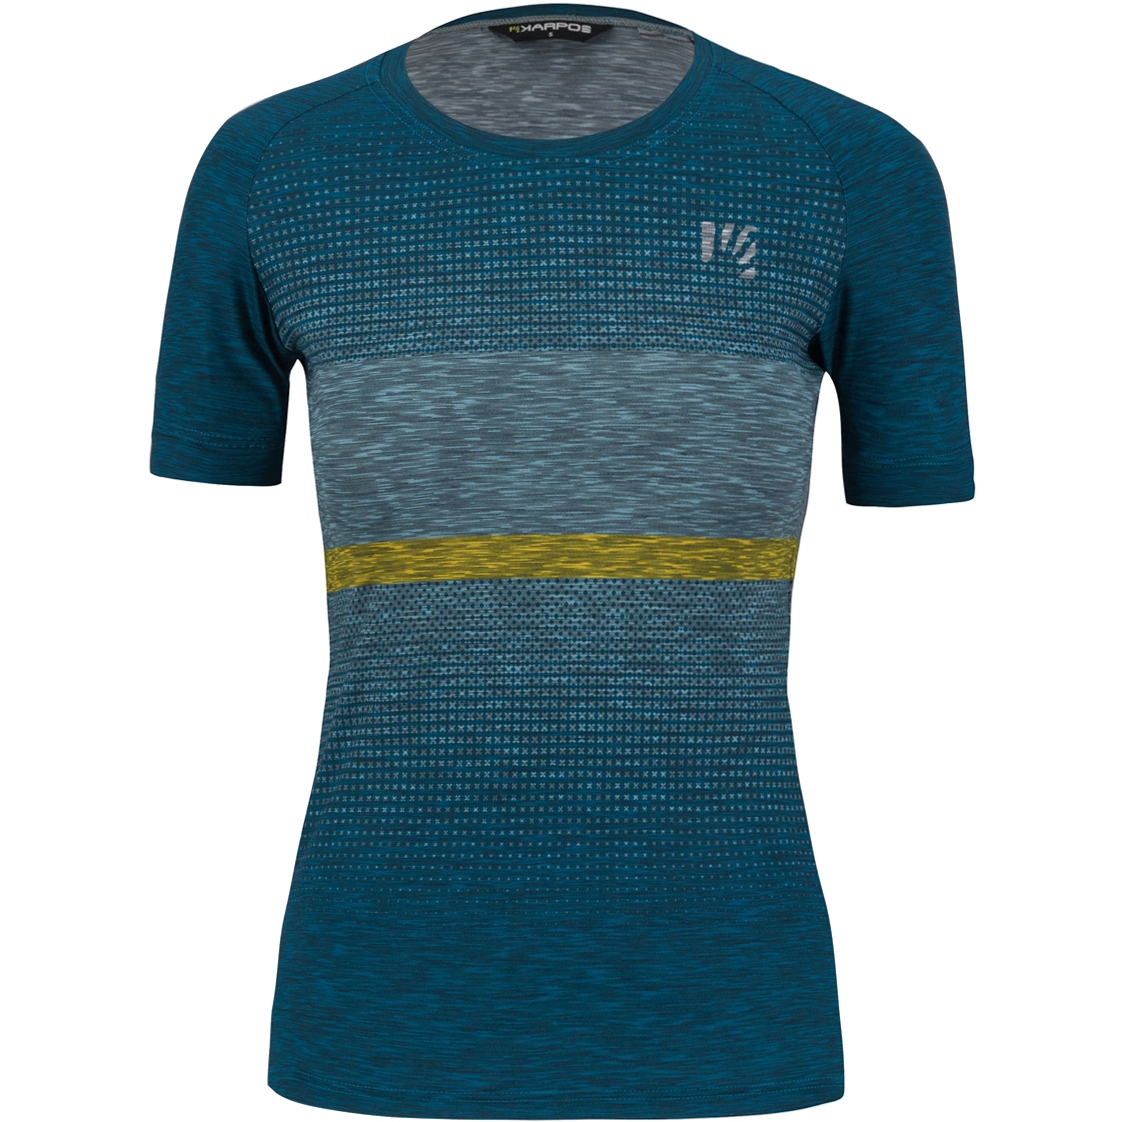 Produktbild von Karpos Verve T-Shirt Damen - corsair/adriatic blue